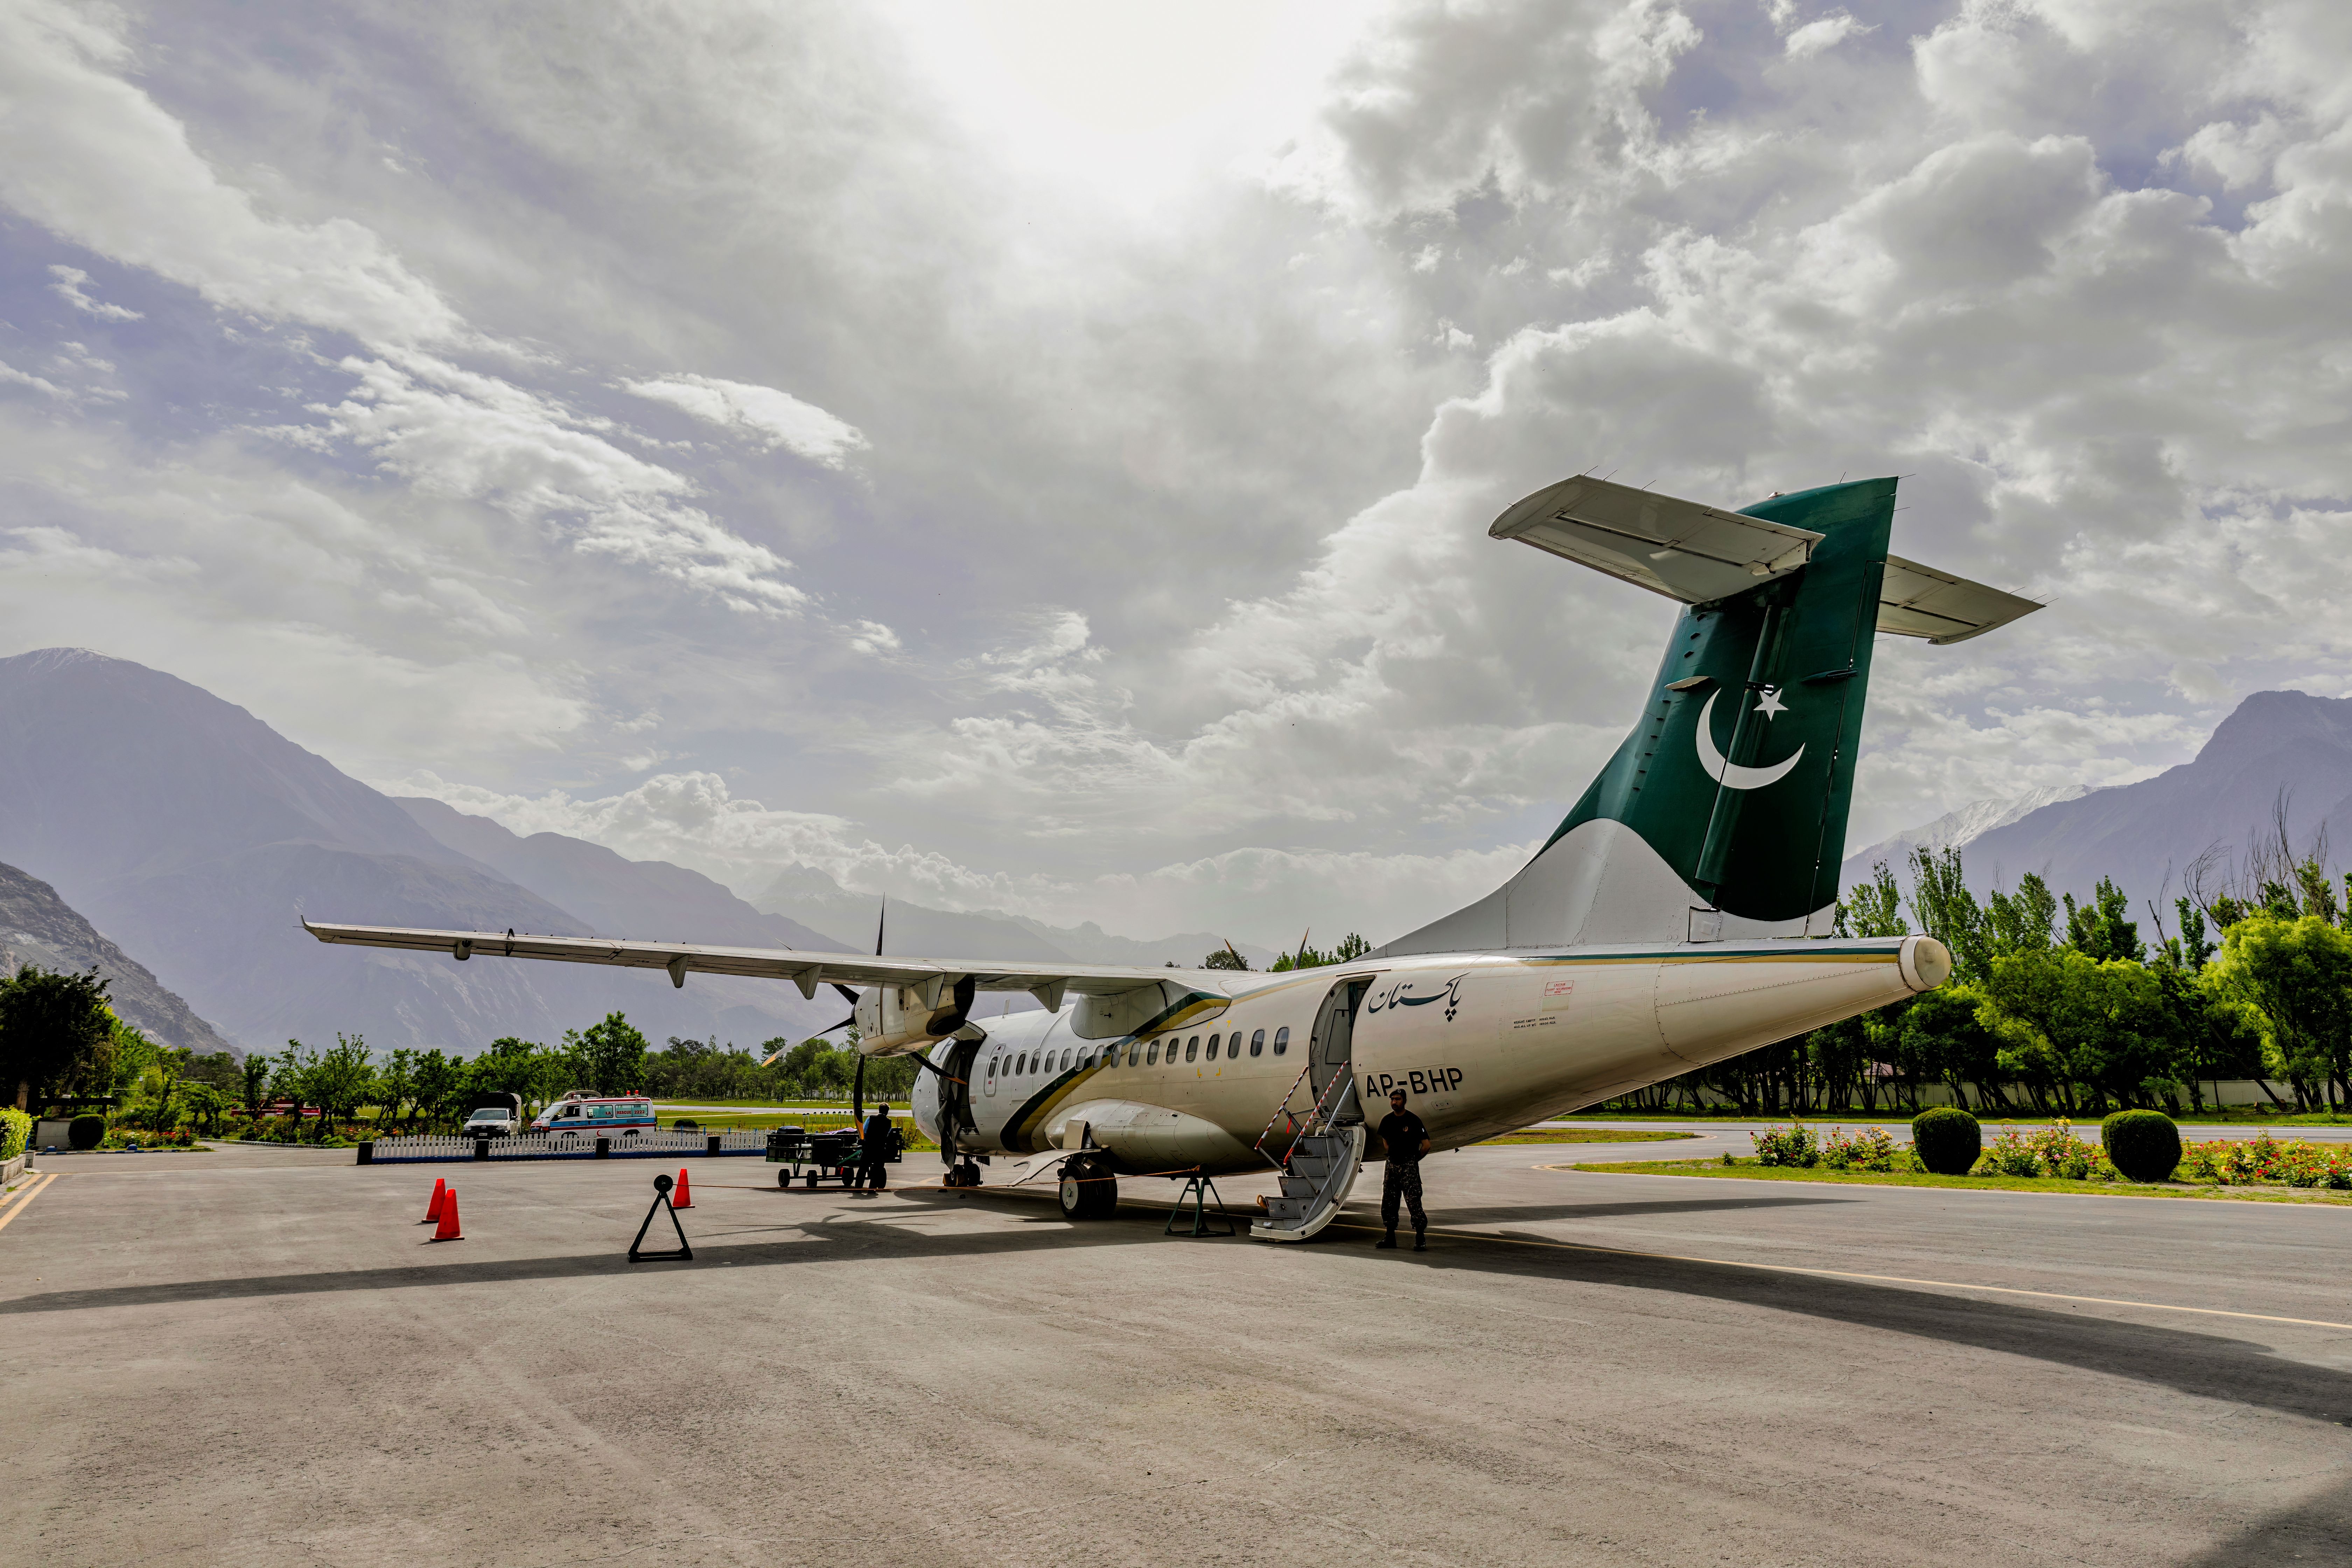 A Pakistan International Airlines ATR aircraft 